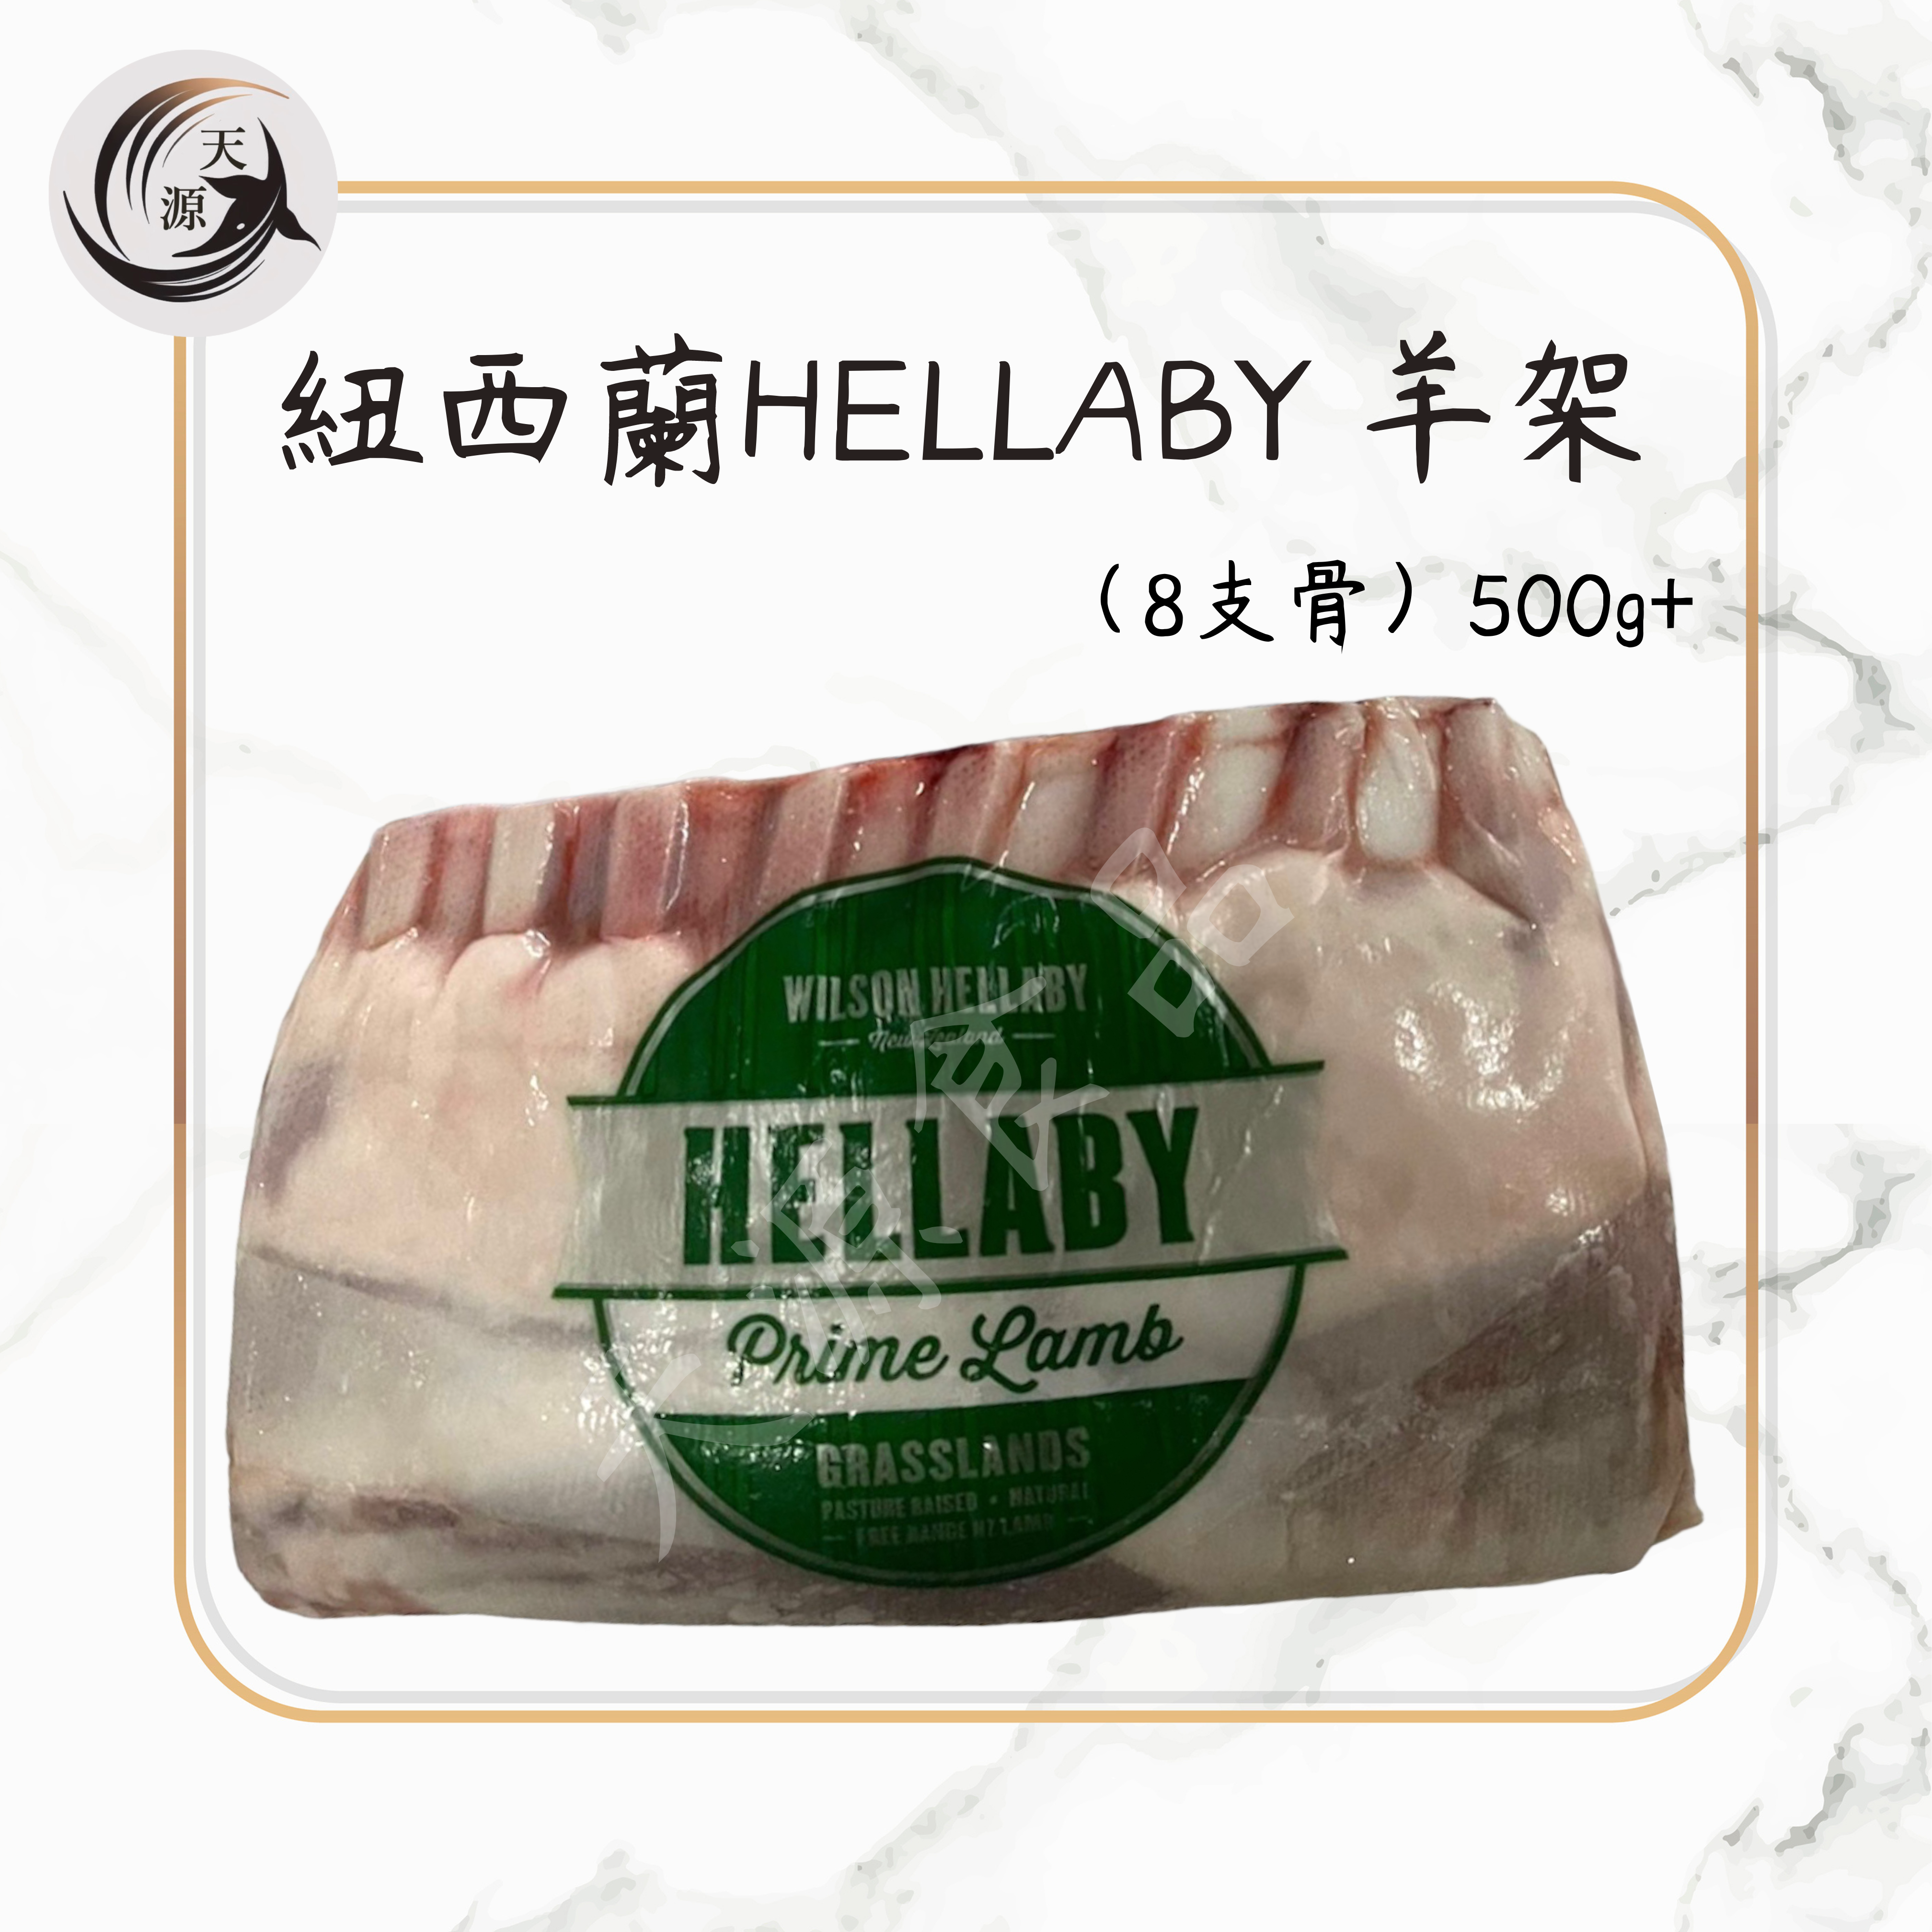 紐西蘭Hellaby 凍法式羊仔架 500g+